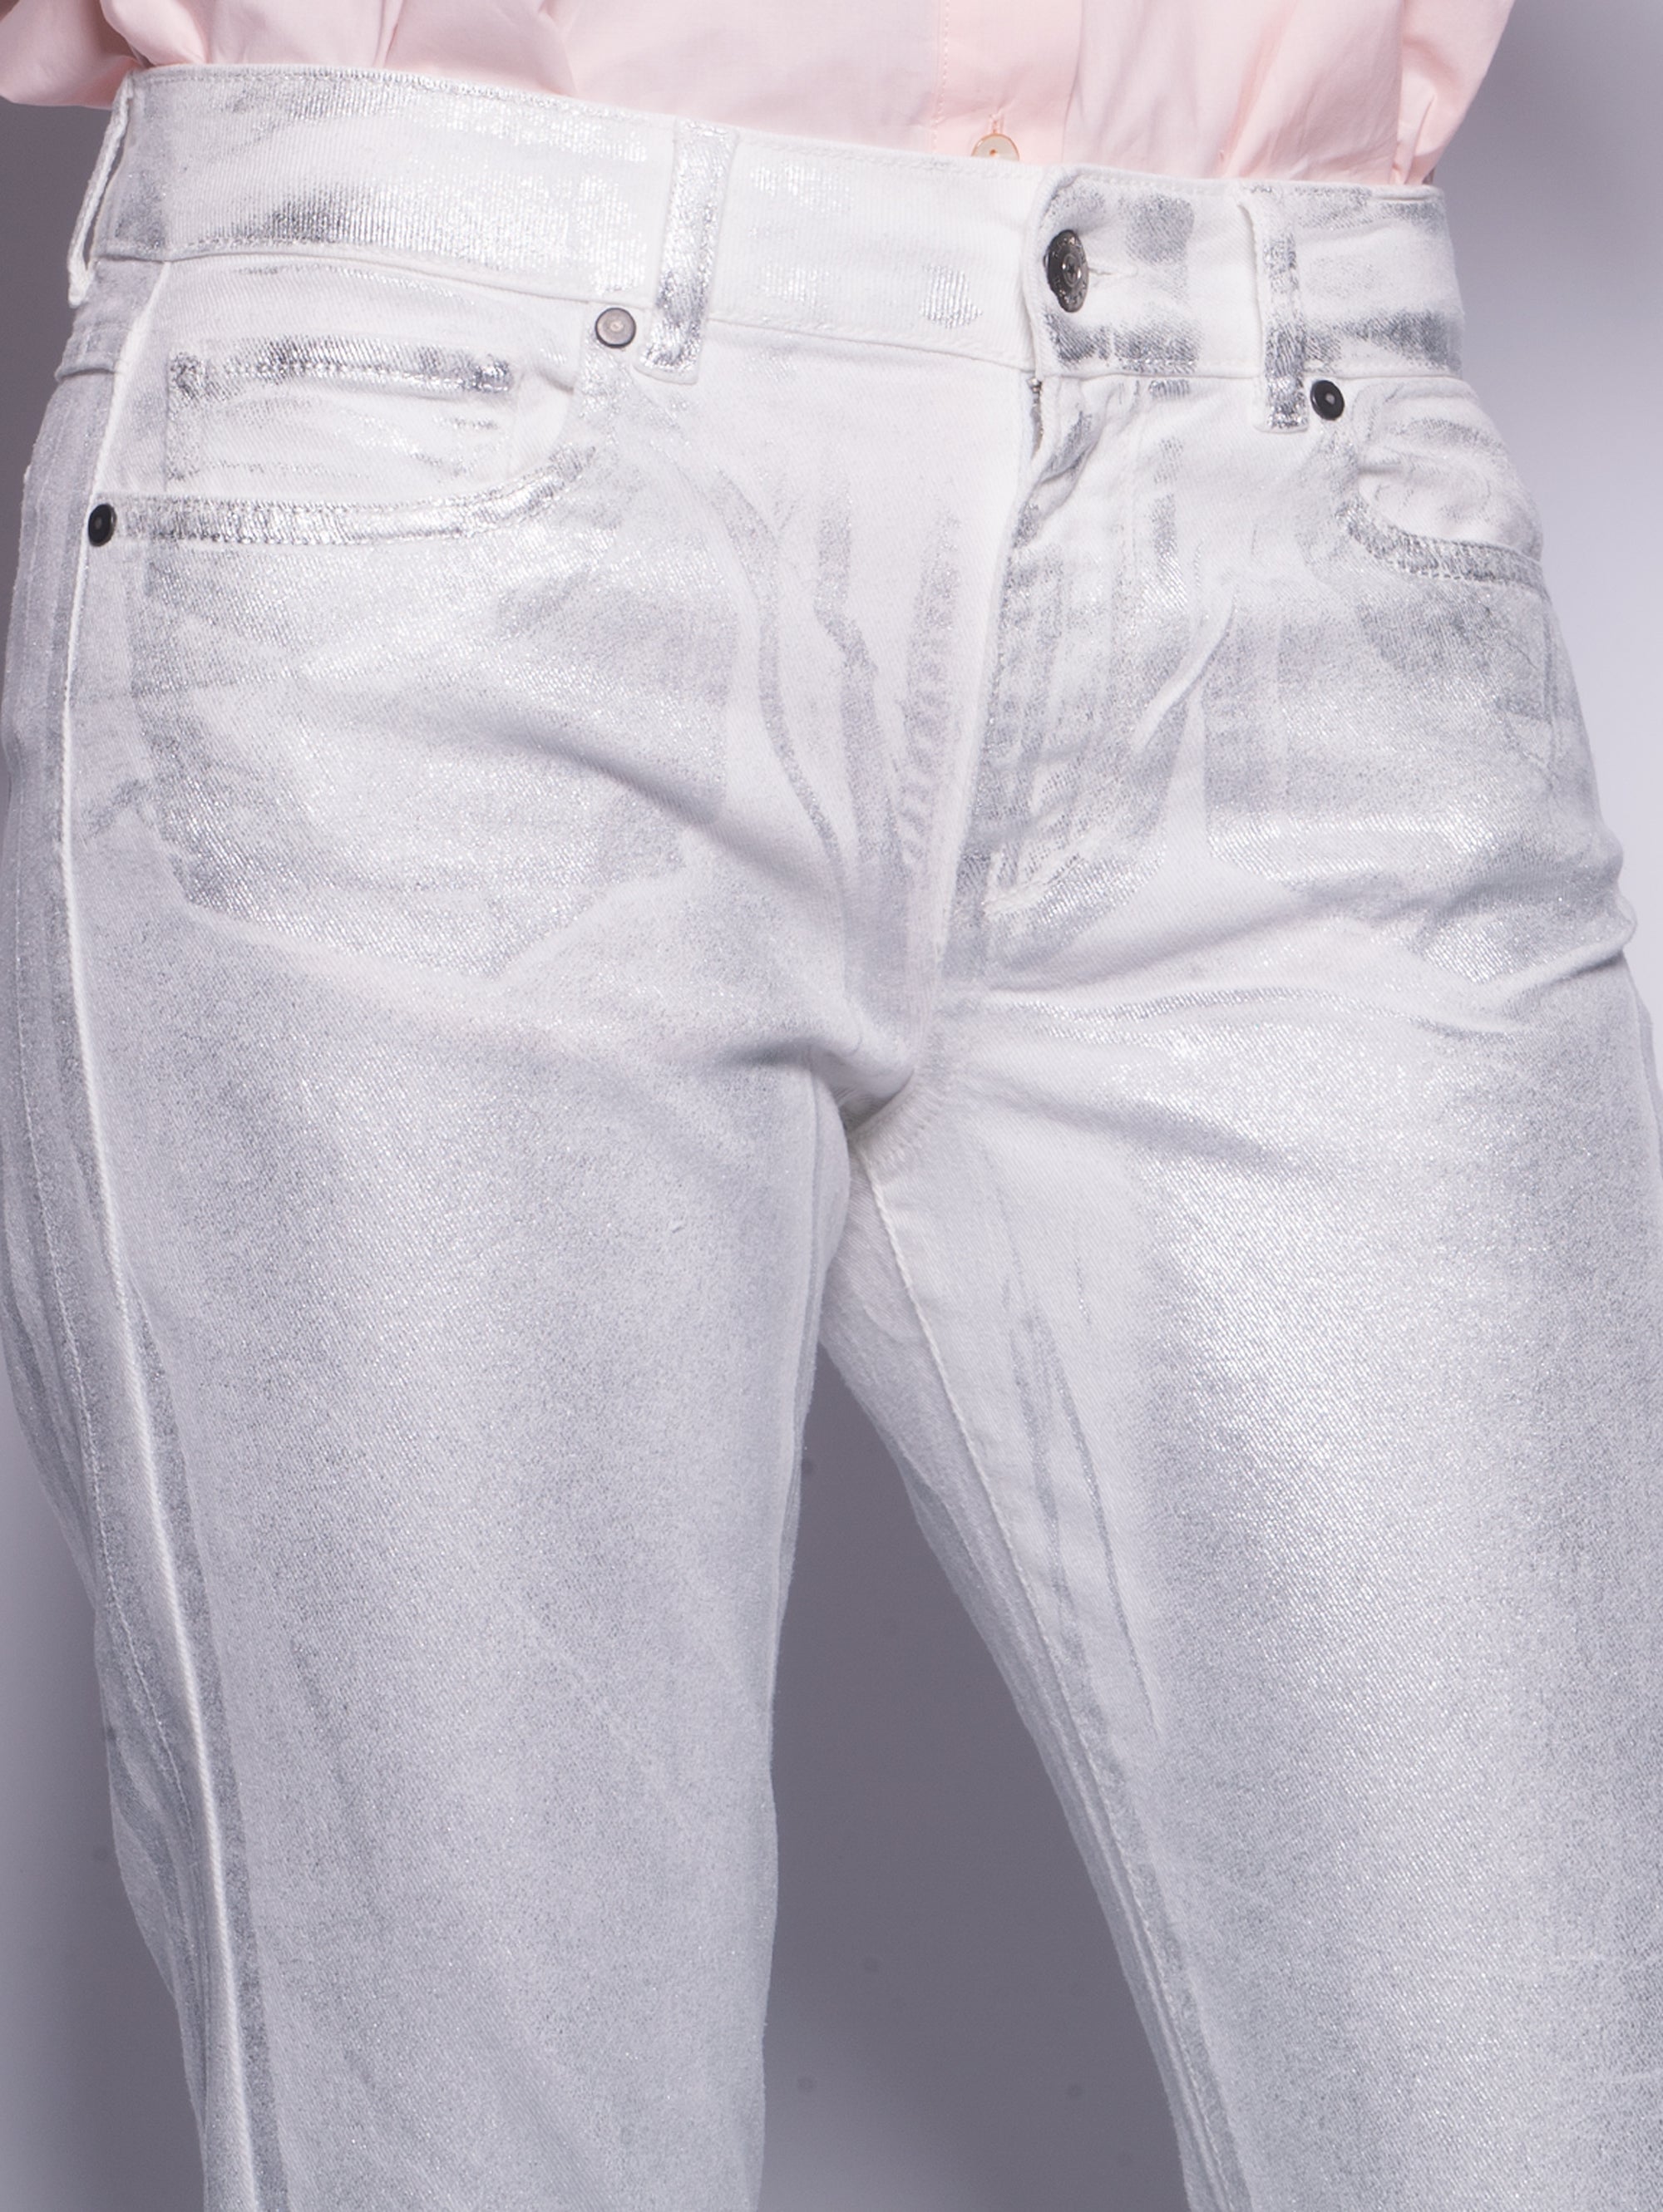 Silberbeschichtete Jeans